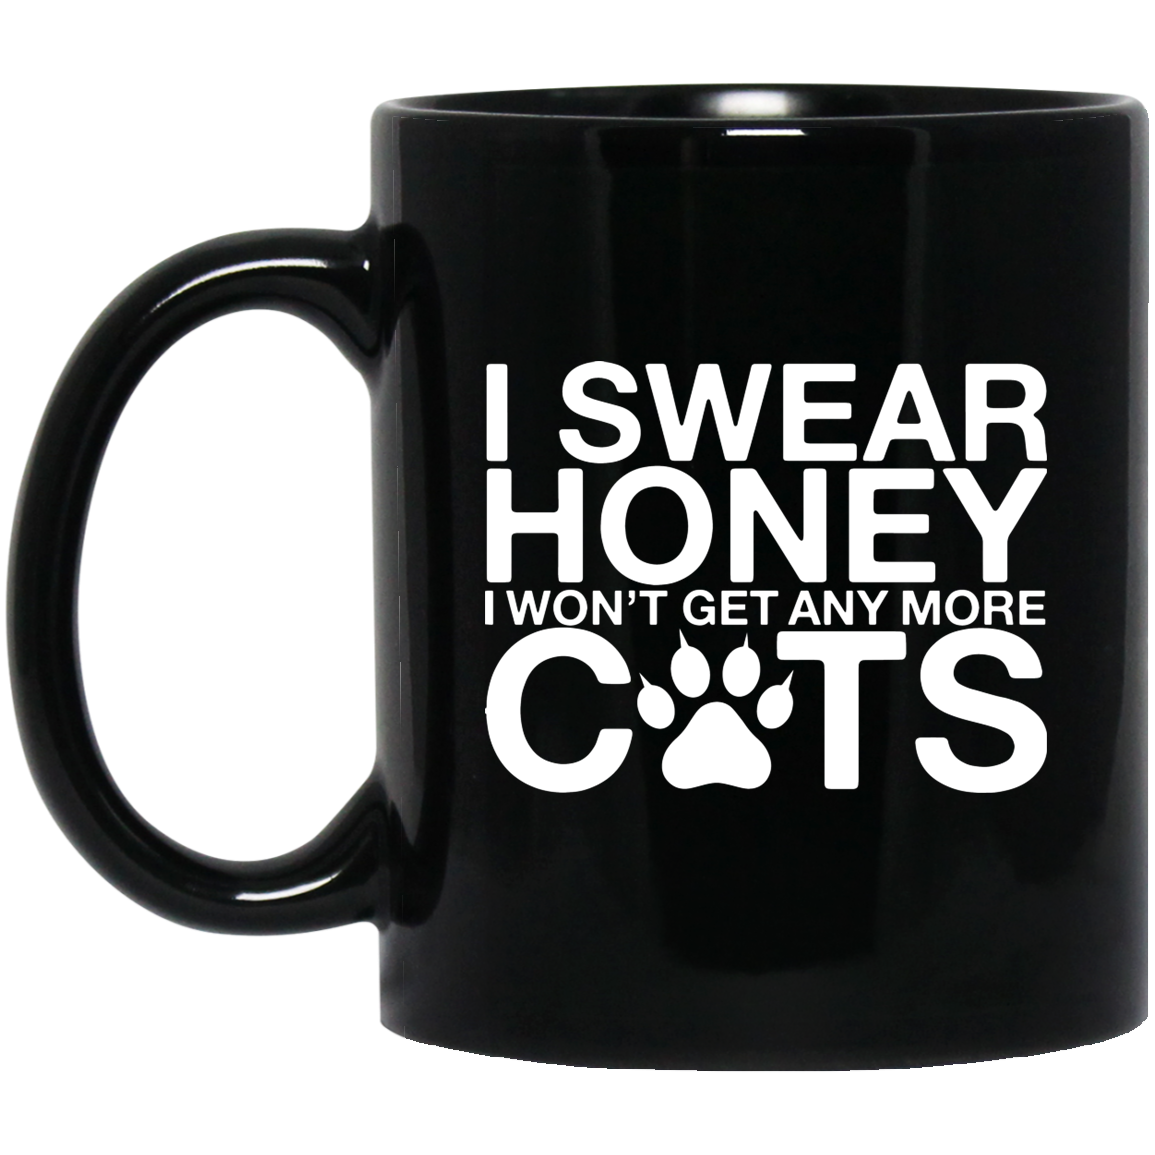 I Swear Honey Cats - Black Mugs